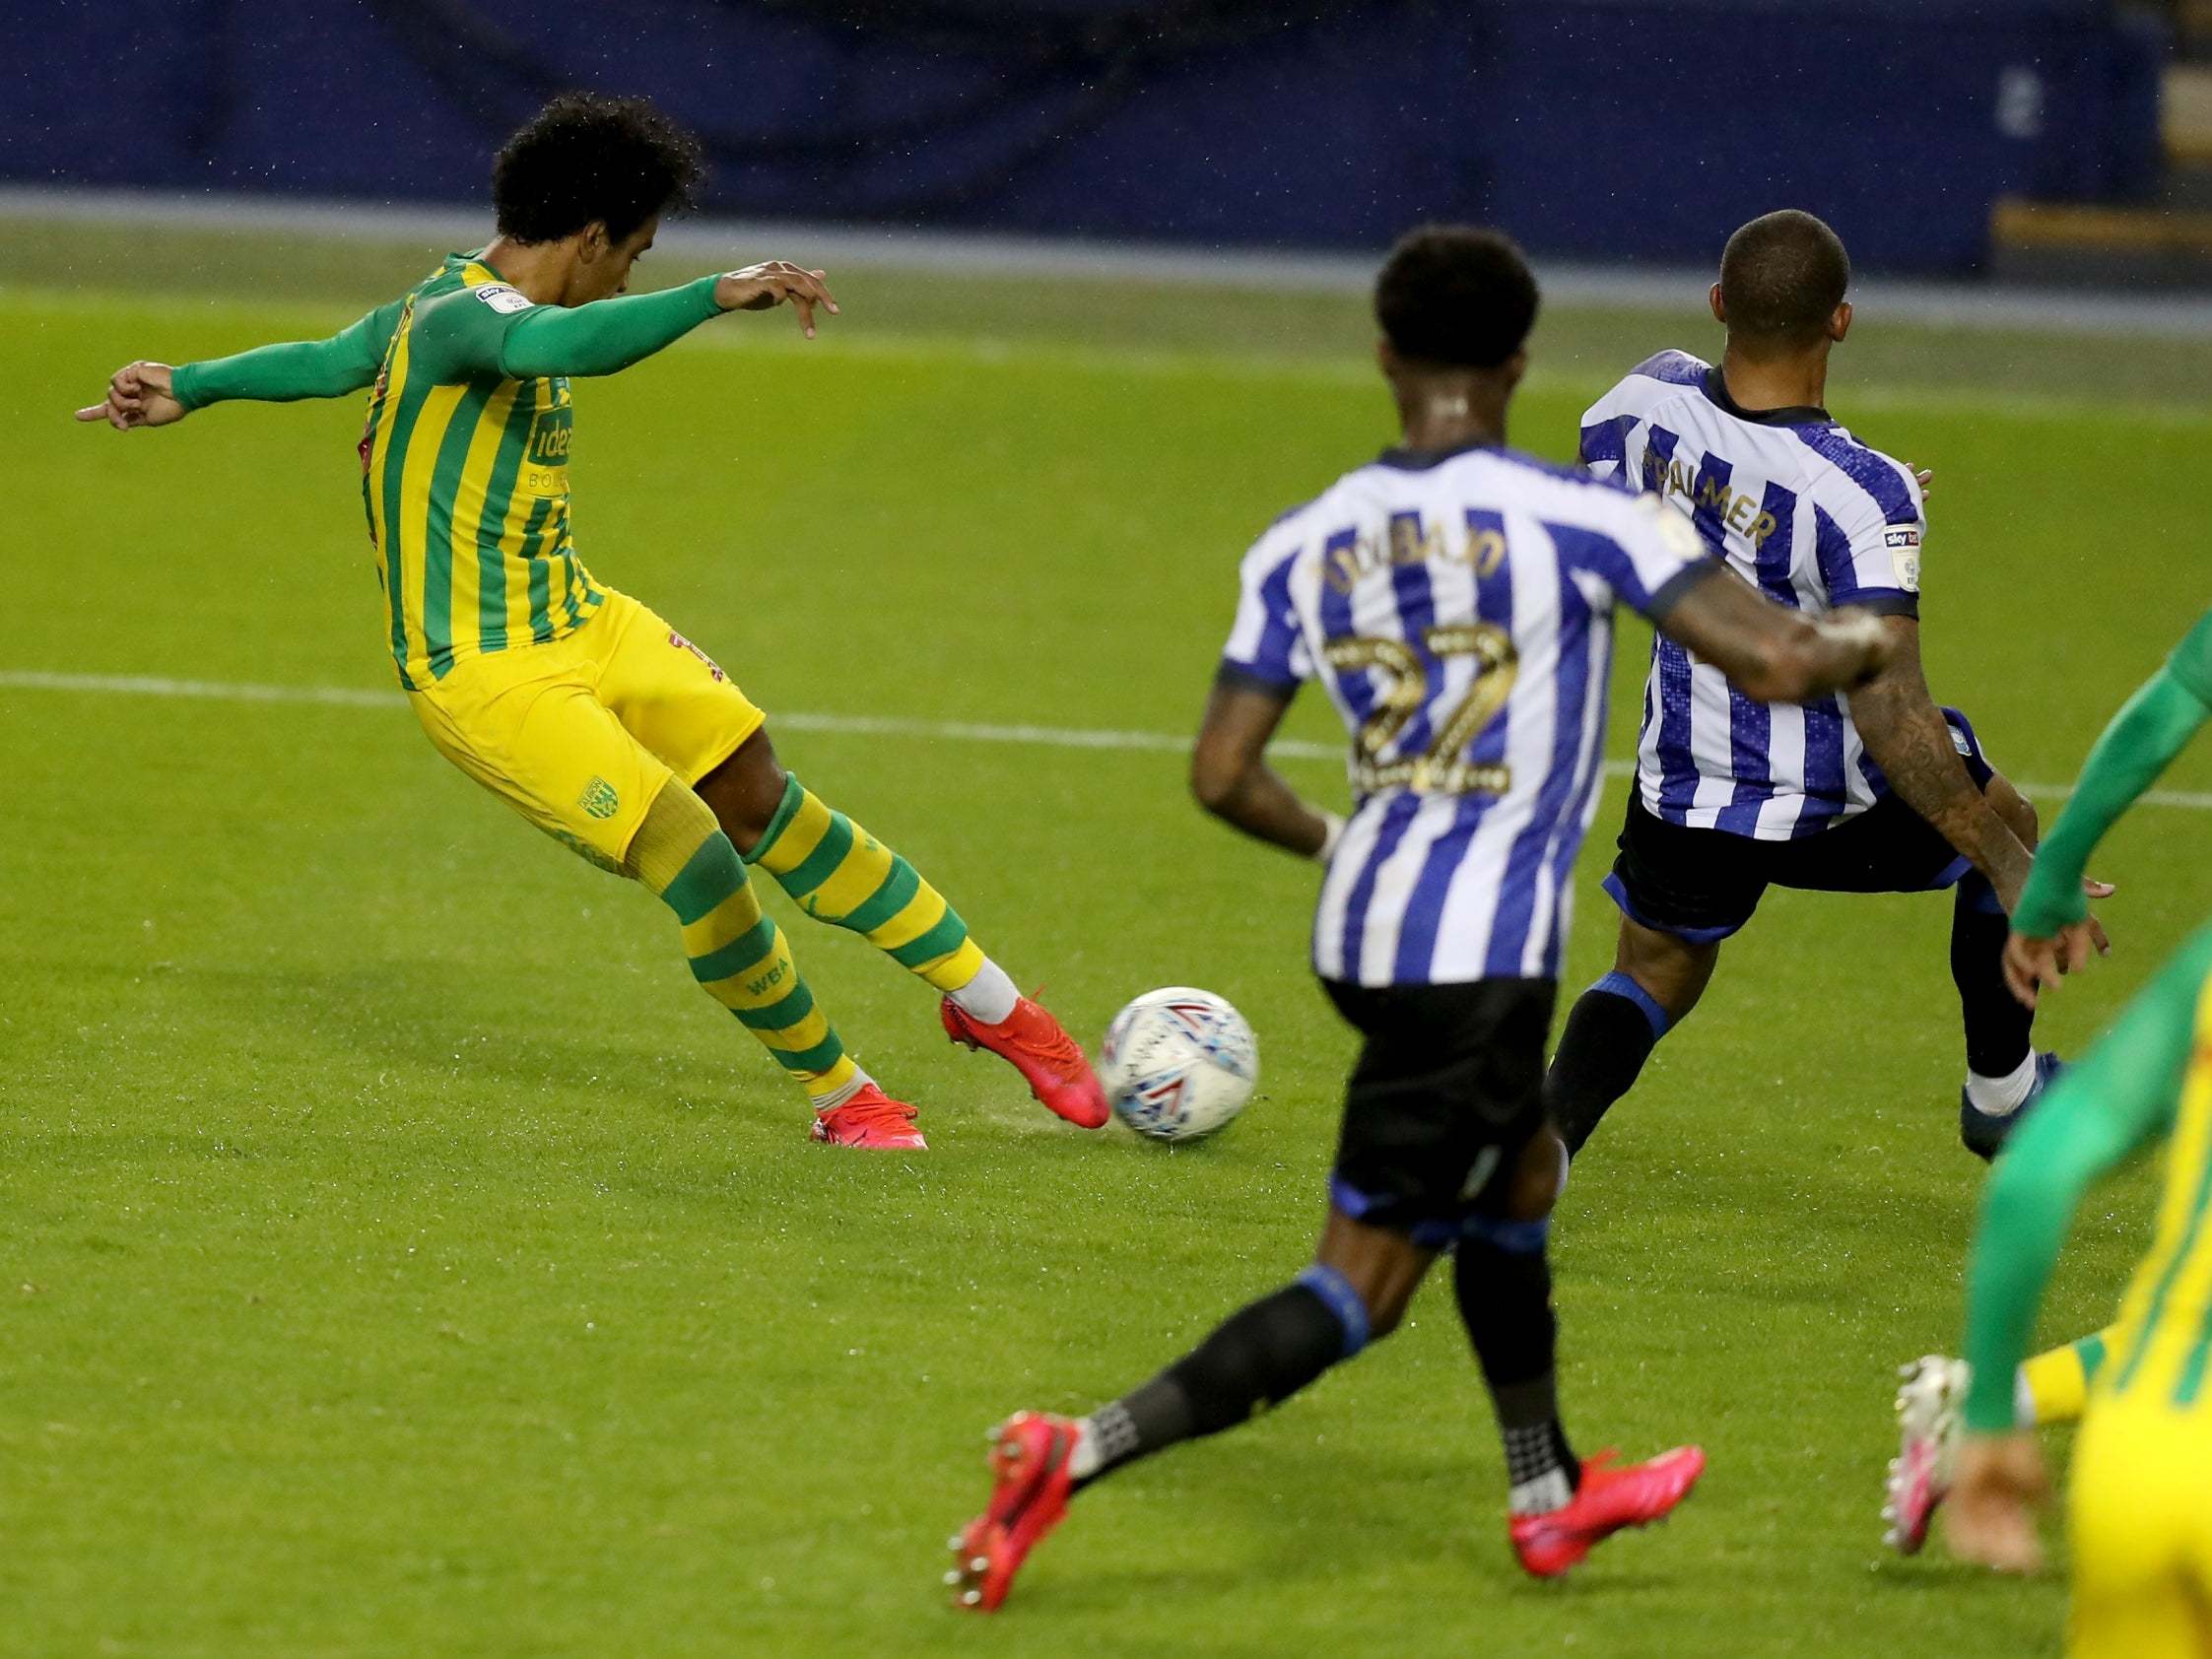 Matheus Pereira scores his second goal of the game